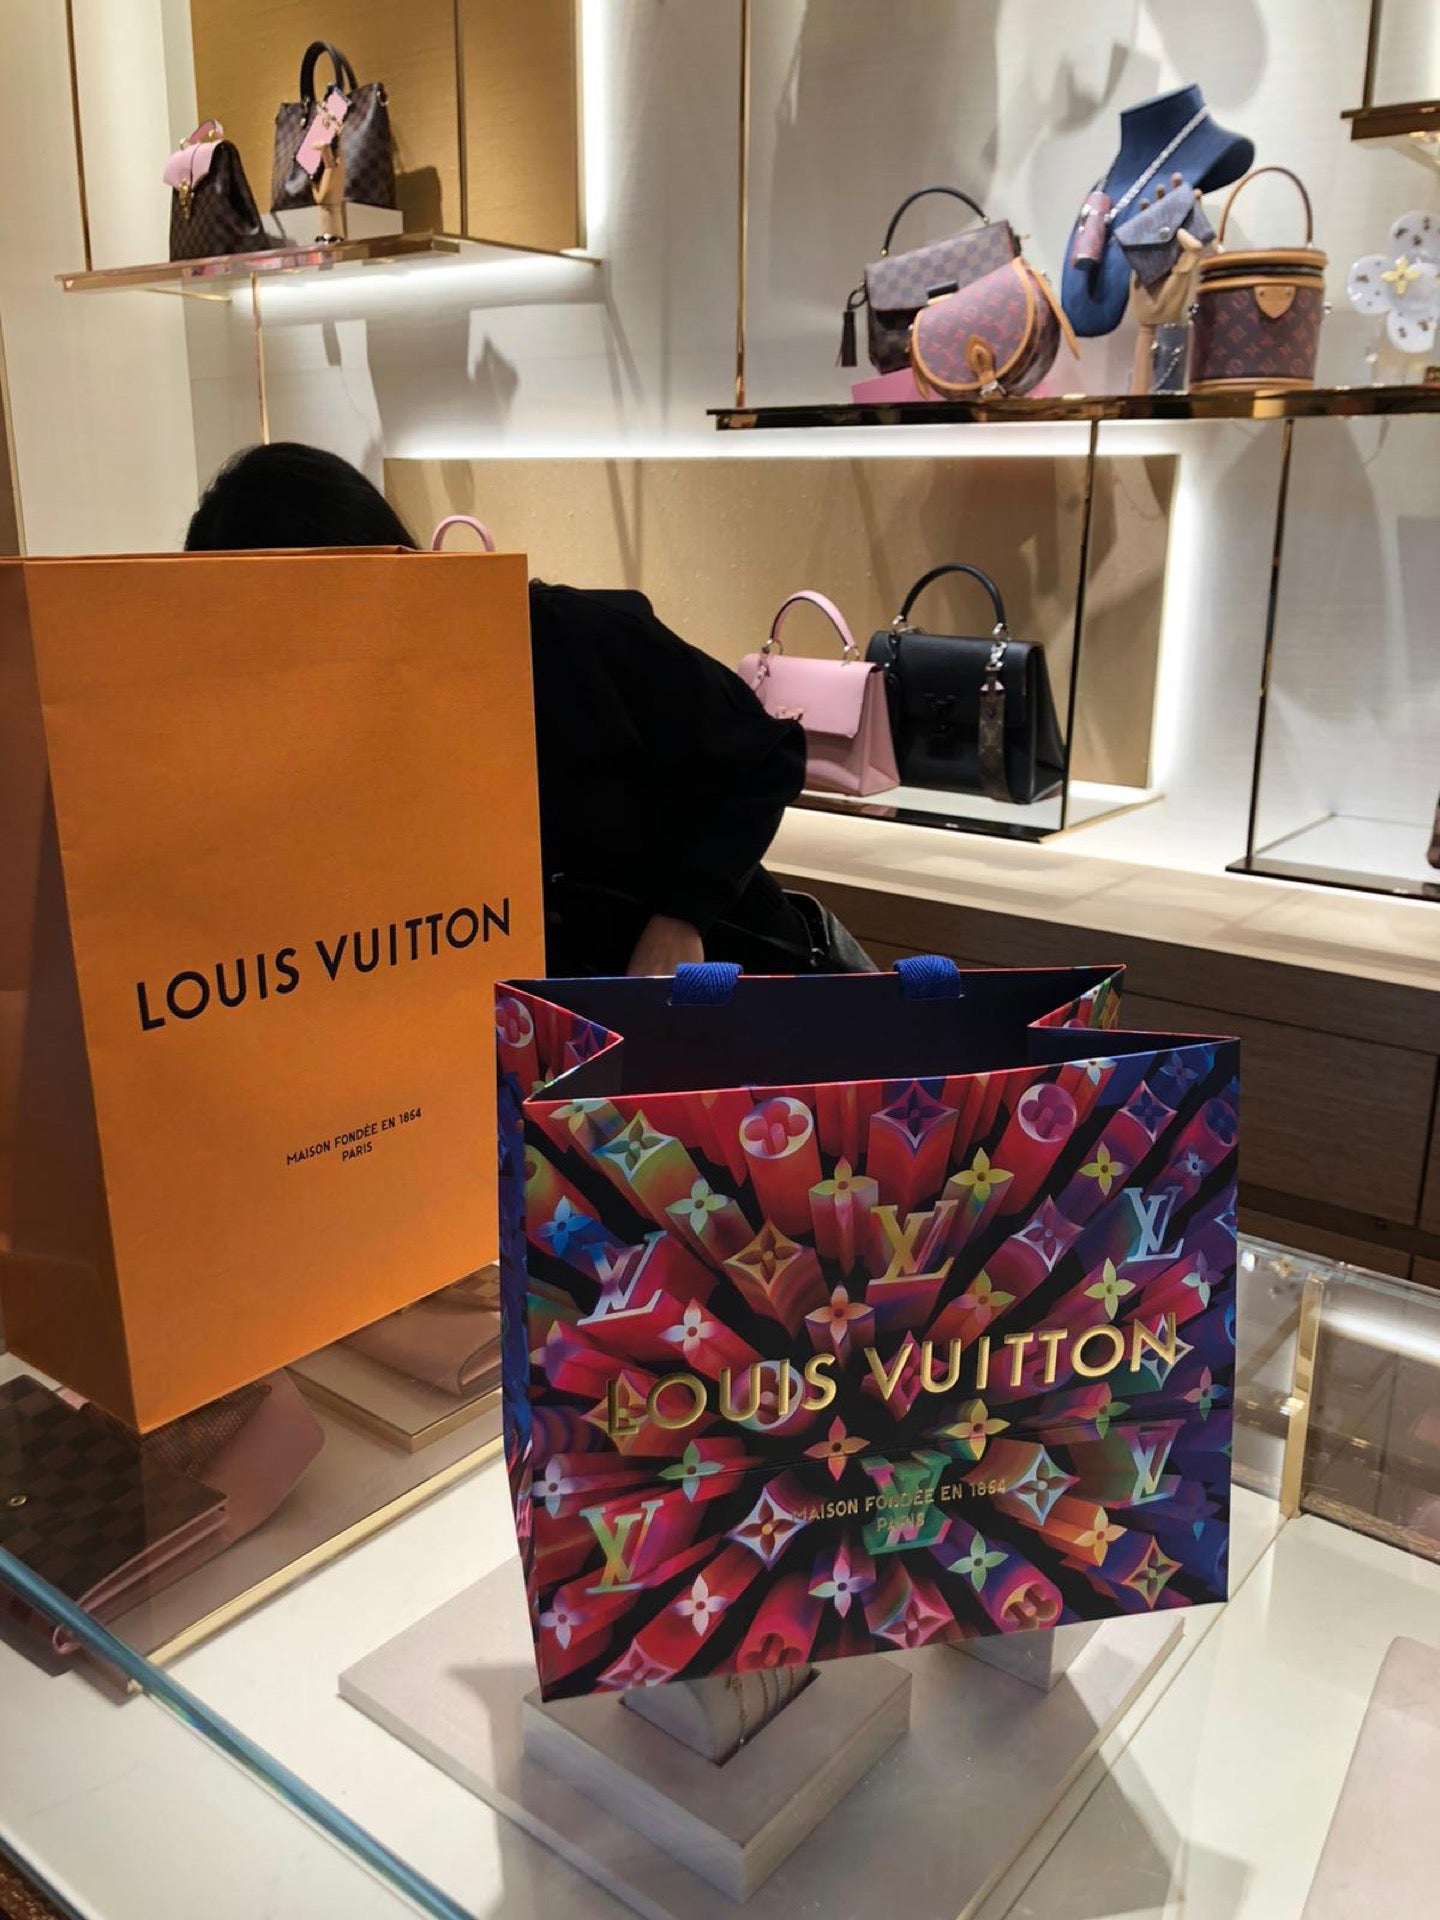 Louis Vuitton Tampa Bay, 2223 N. Westshore Blvd, International